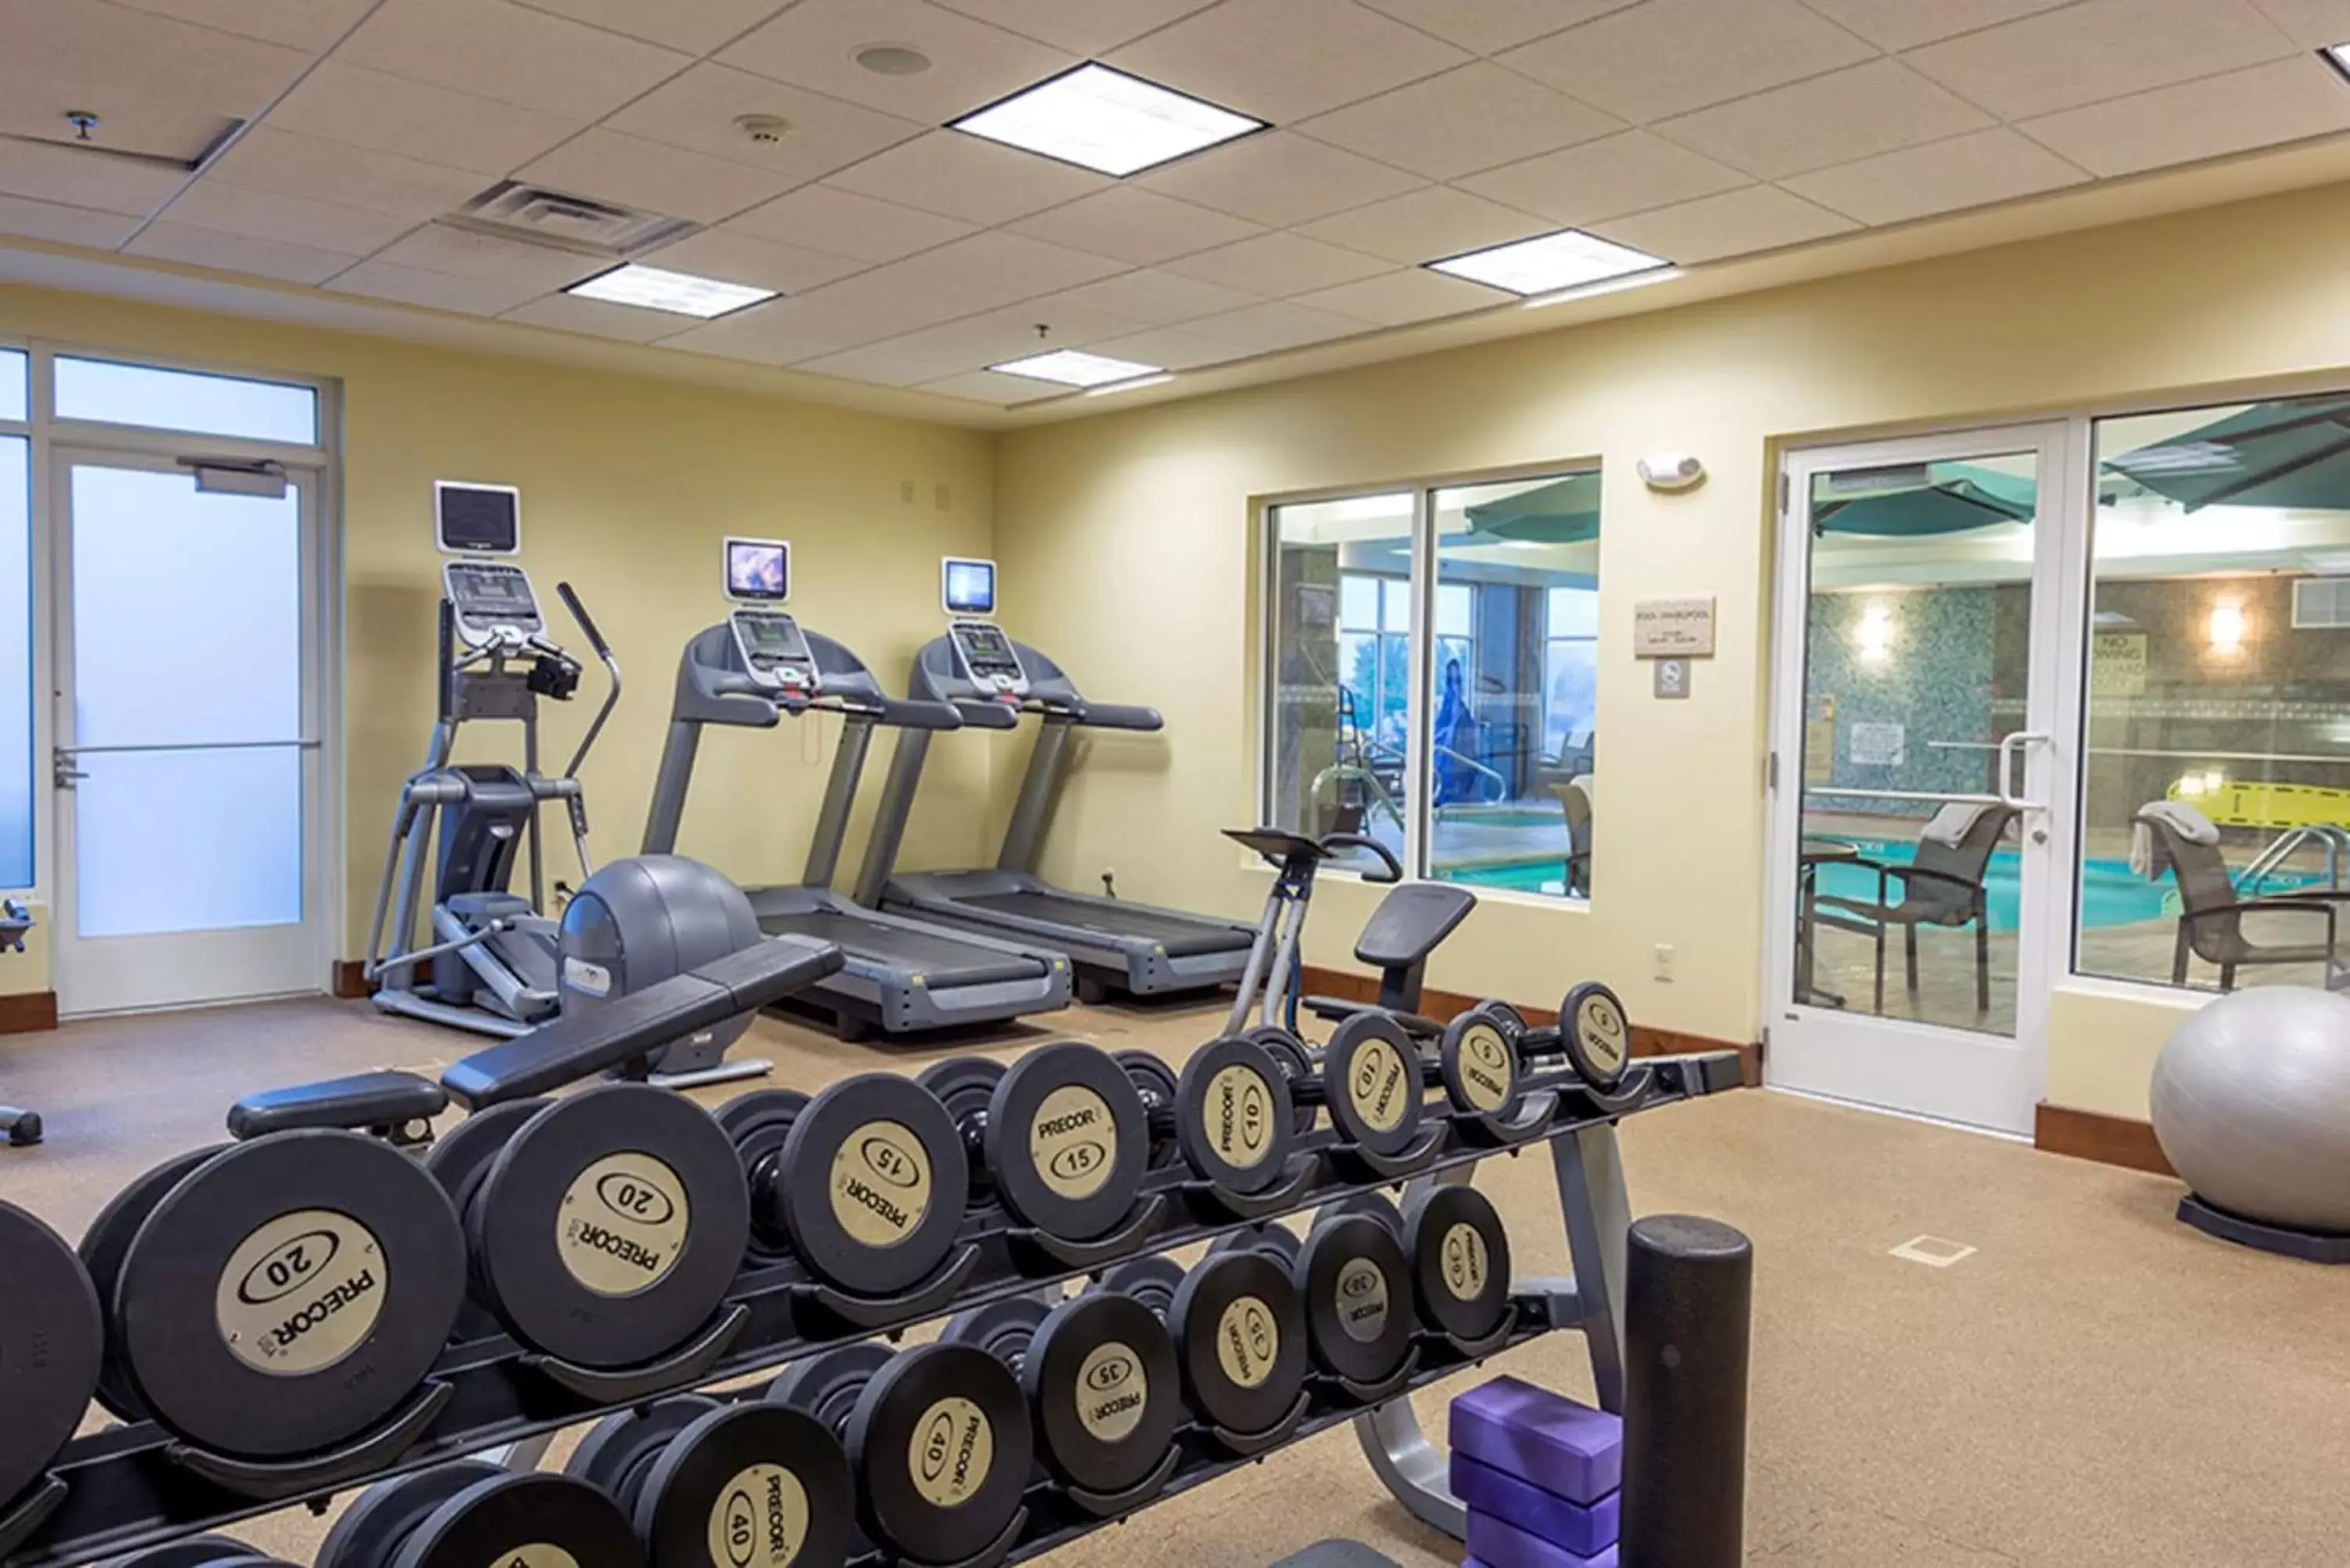 Fitness centre/facilities, Fitness Center/Facilities in Hilton Garden Inn Billings